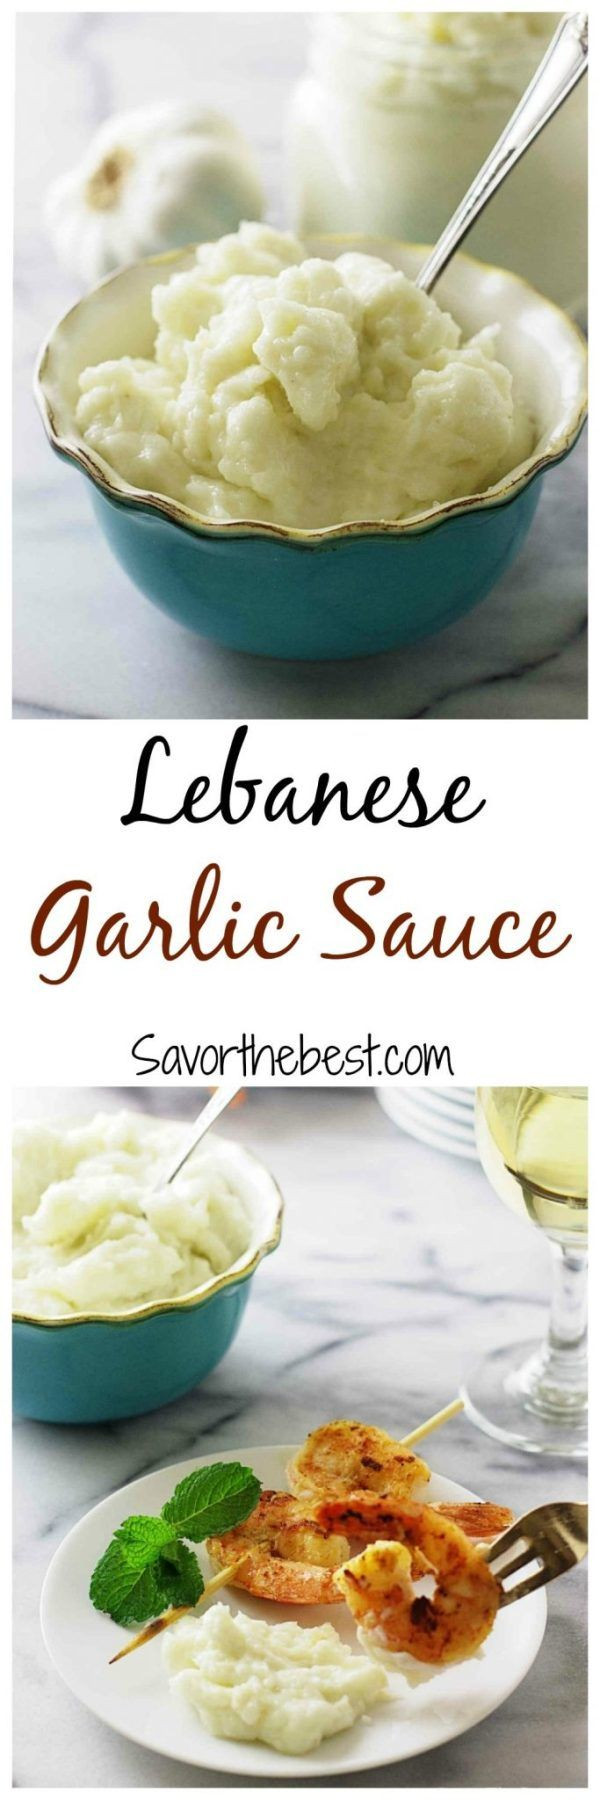 Middle Eastern Garlic Sauce Recipes
 Lebanese Garlic Sauce Recipe